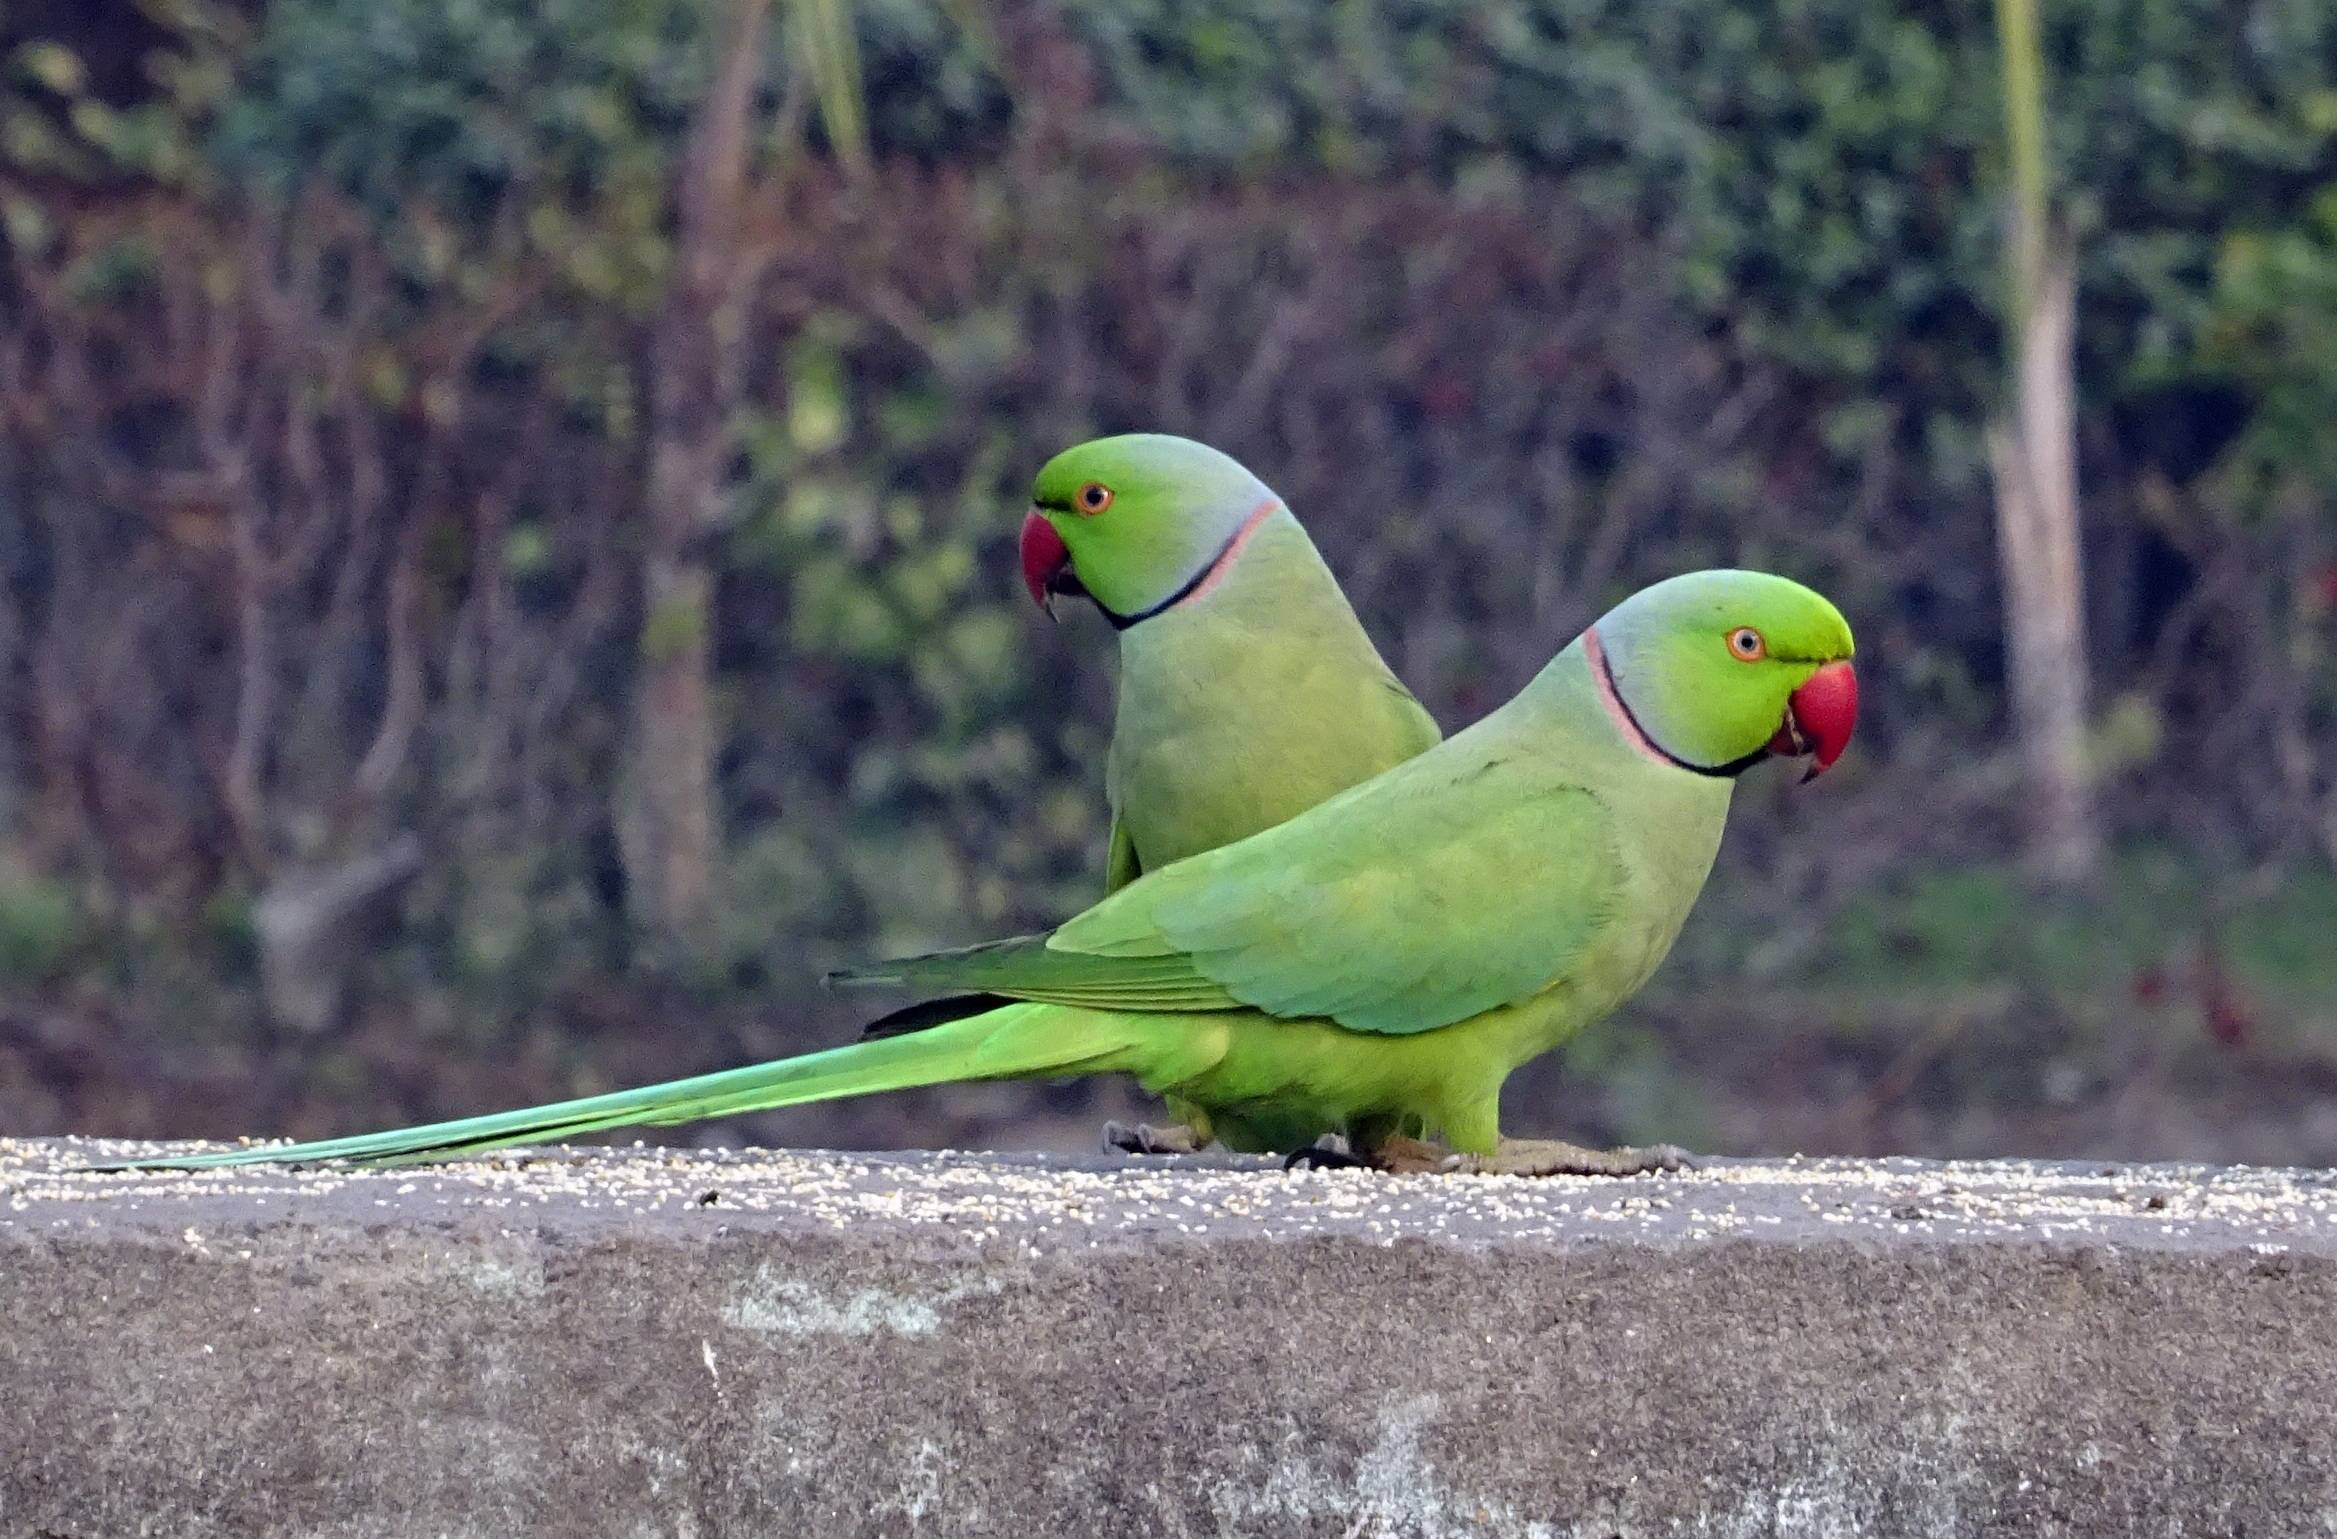 Определение пола ожереловых попугаев  - энциклопедия владельца птицы